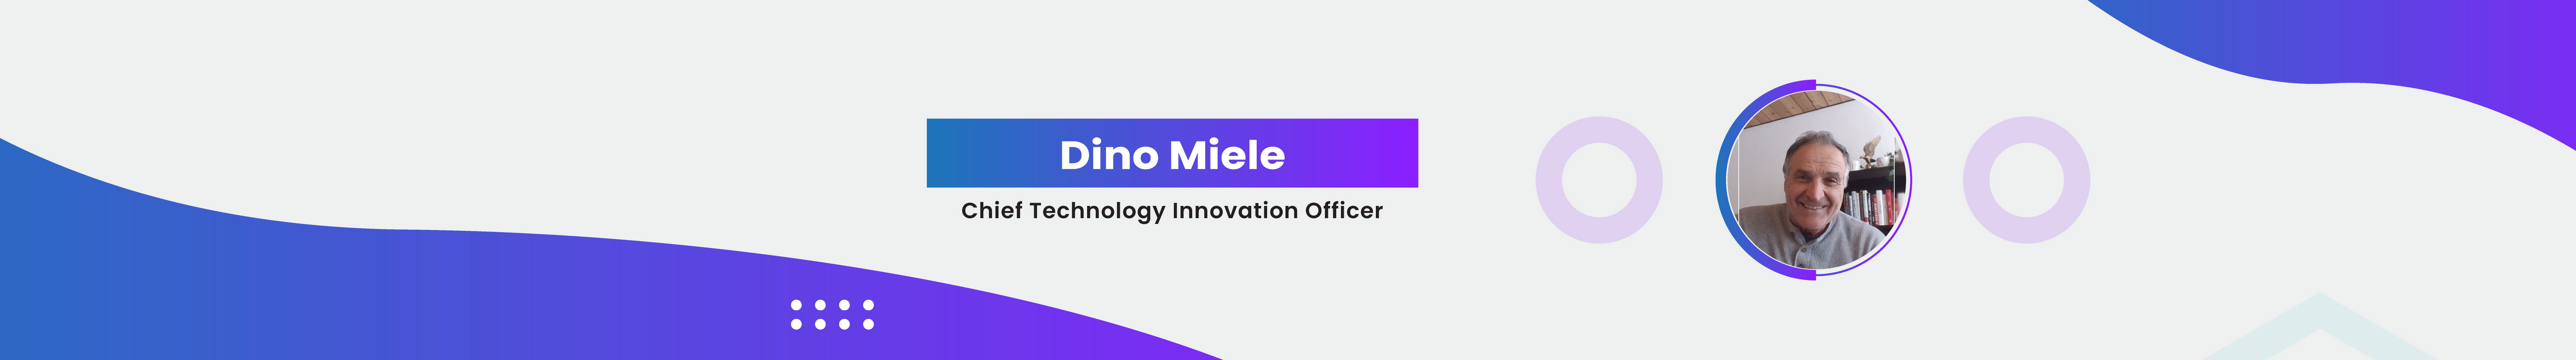 Banner de perfil de Dino Miele